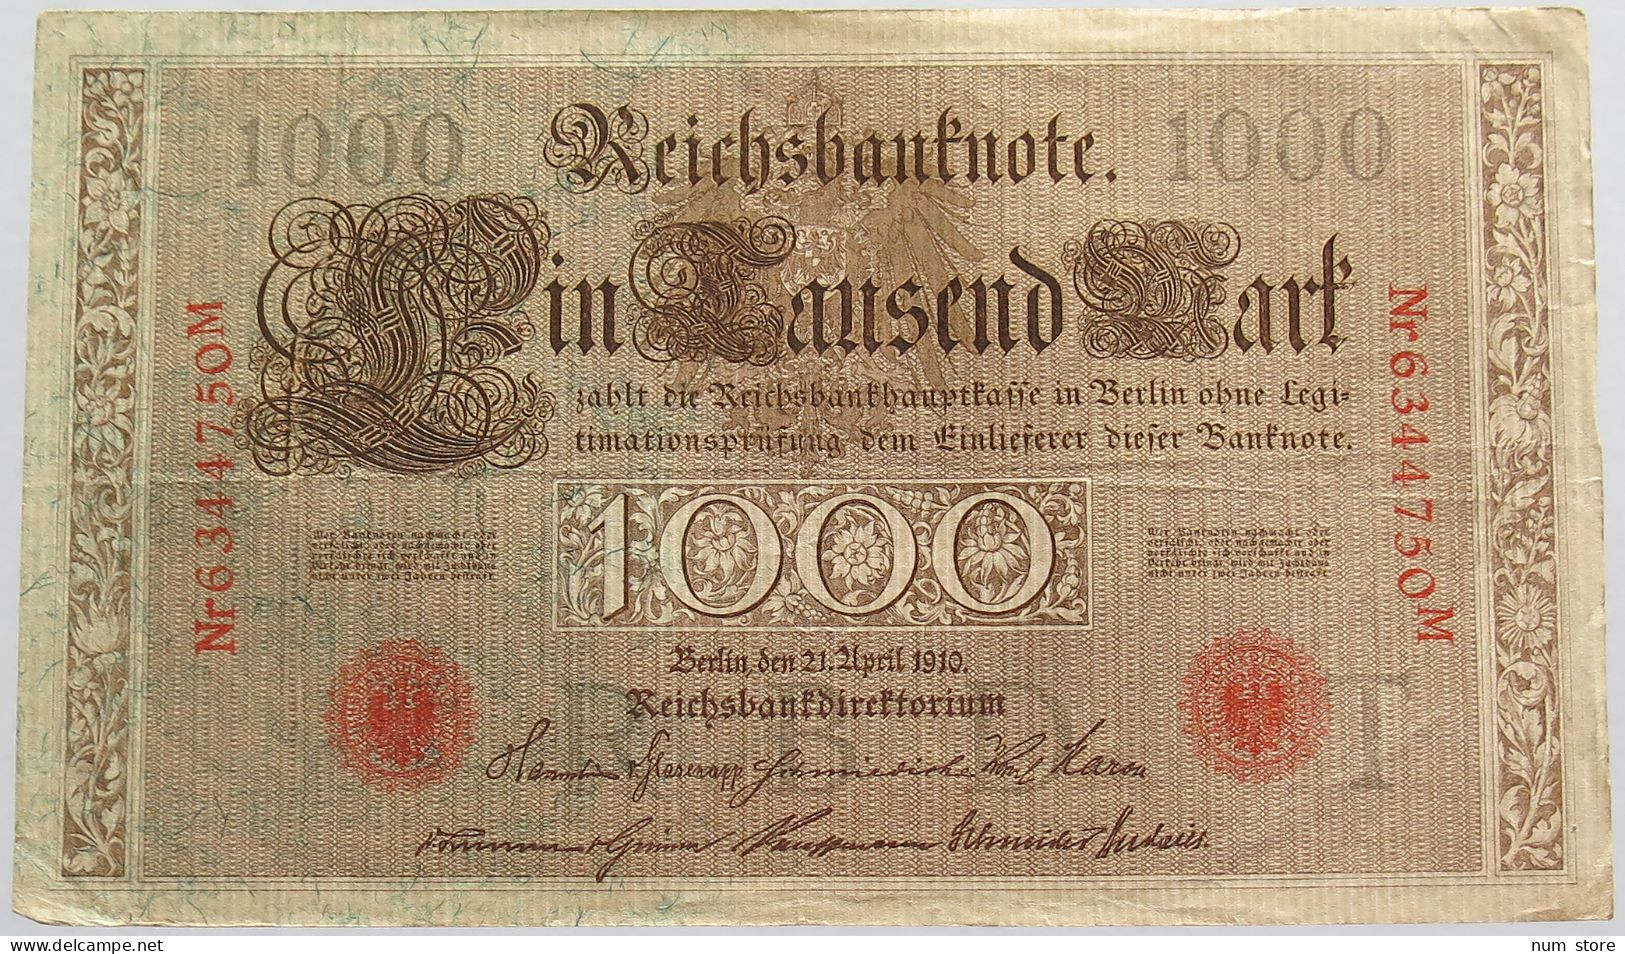 GERMANY 1000 MARK 1910 #alb018 0317 - 1000 Mark